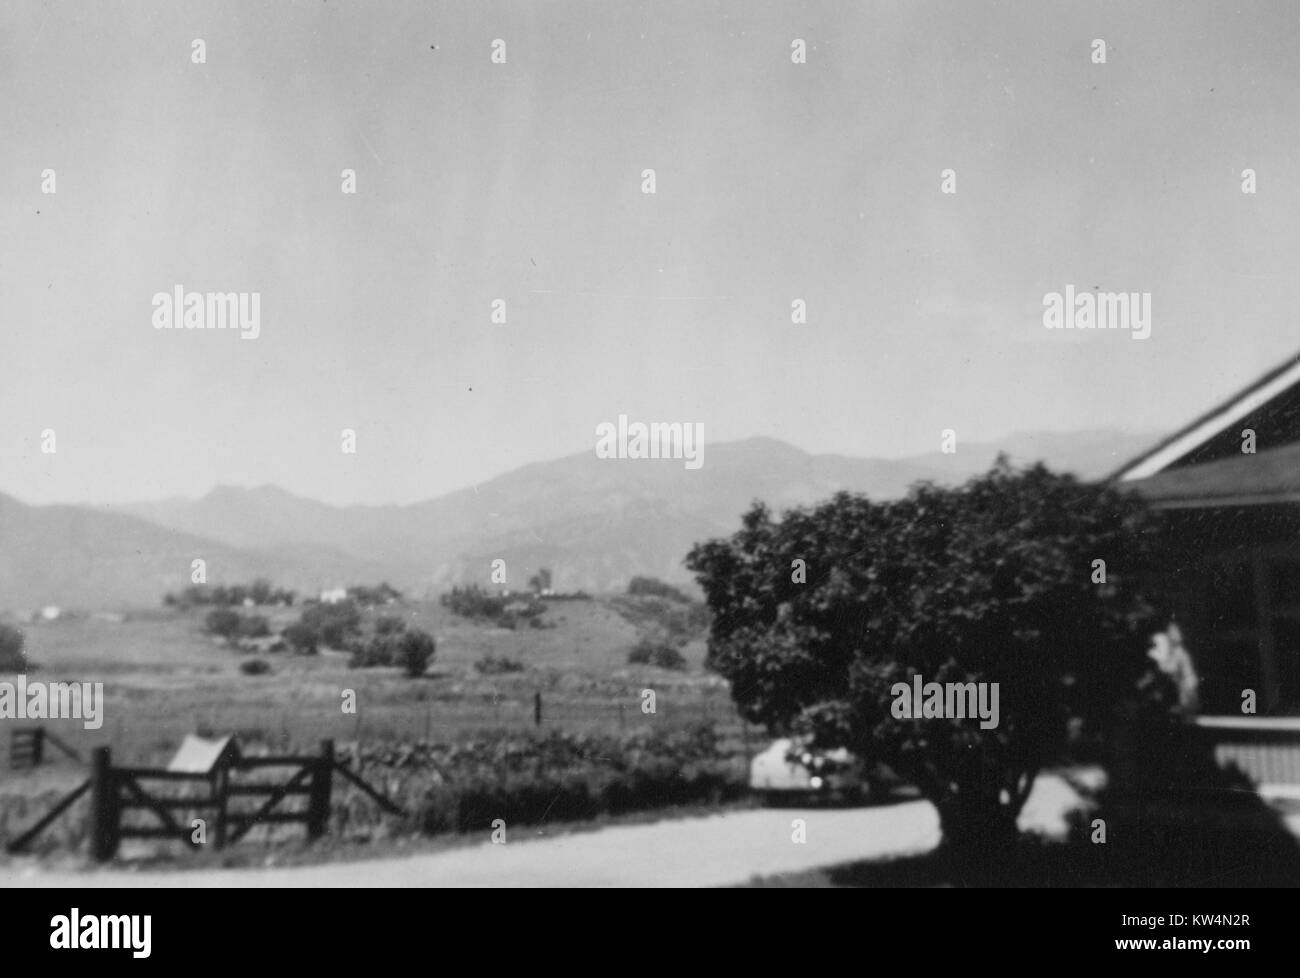 Rurale scena di una fattoria con un piccolo albero accanto a una casa colonica con un cancello, campi e montagne sullo sfondo, Stati Uniti, 1943. Foto Stock